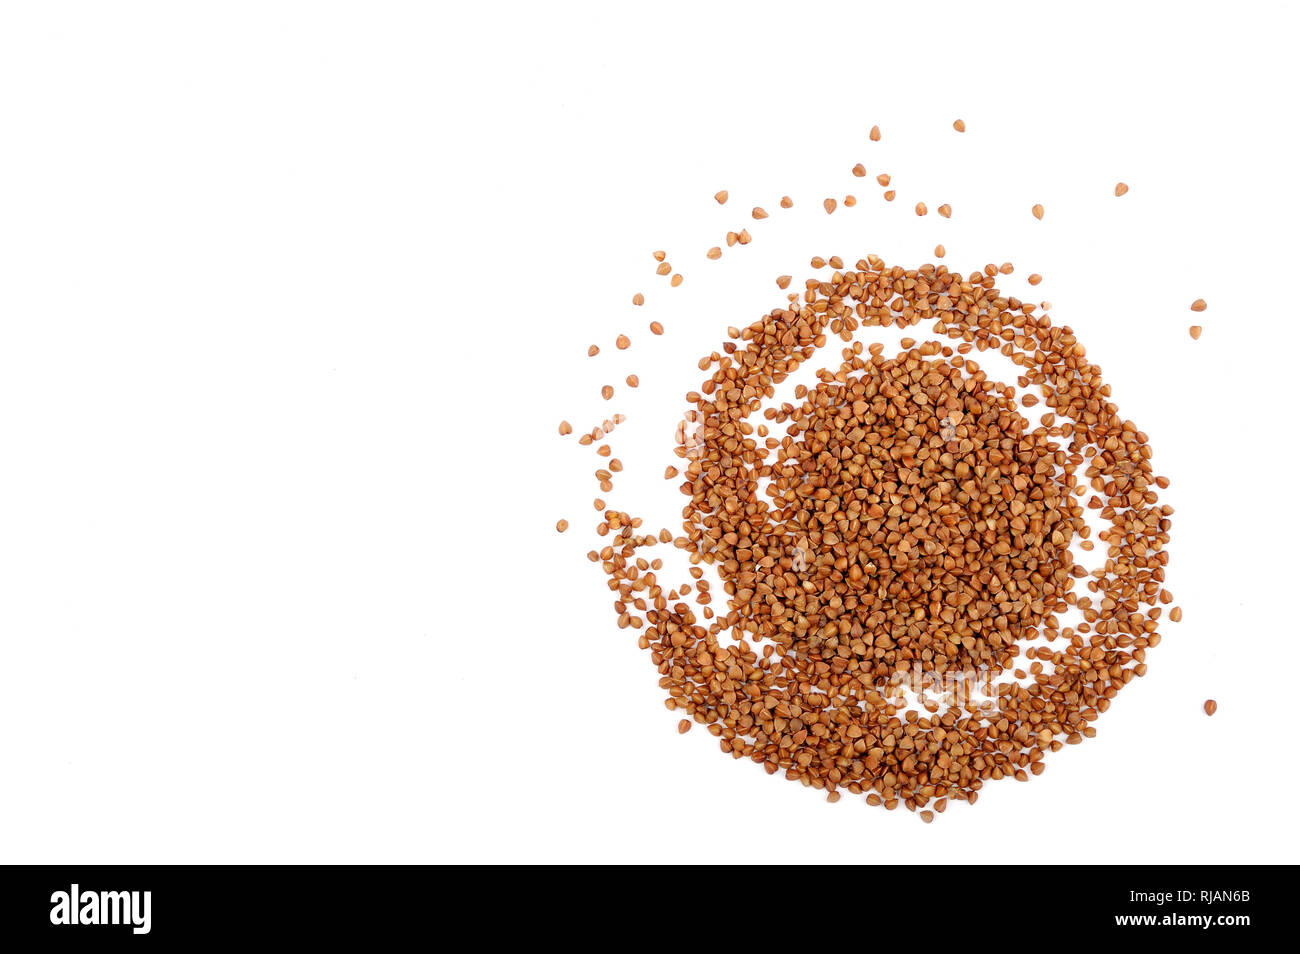 Wallpaper composizione astratta di organico grano saraceno .grano non contiene glutine, essa può essere mangiato da persone con glutine-disturbi correlati. Utile naturale Foto Stock